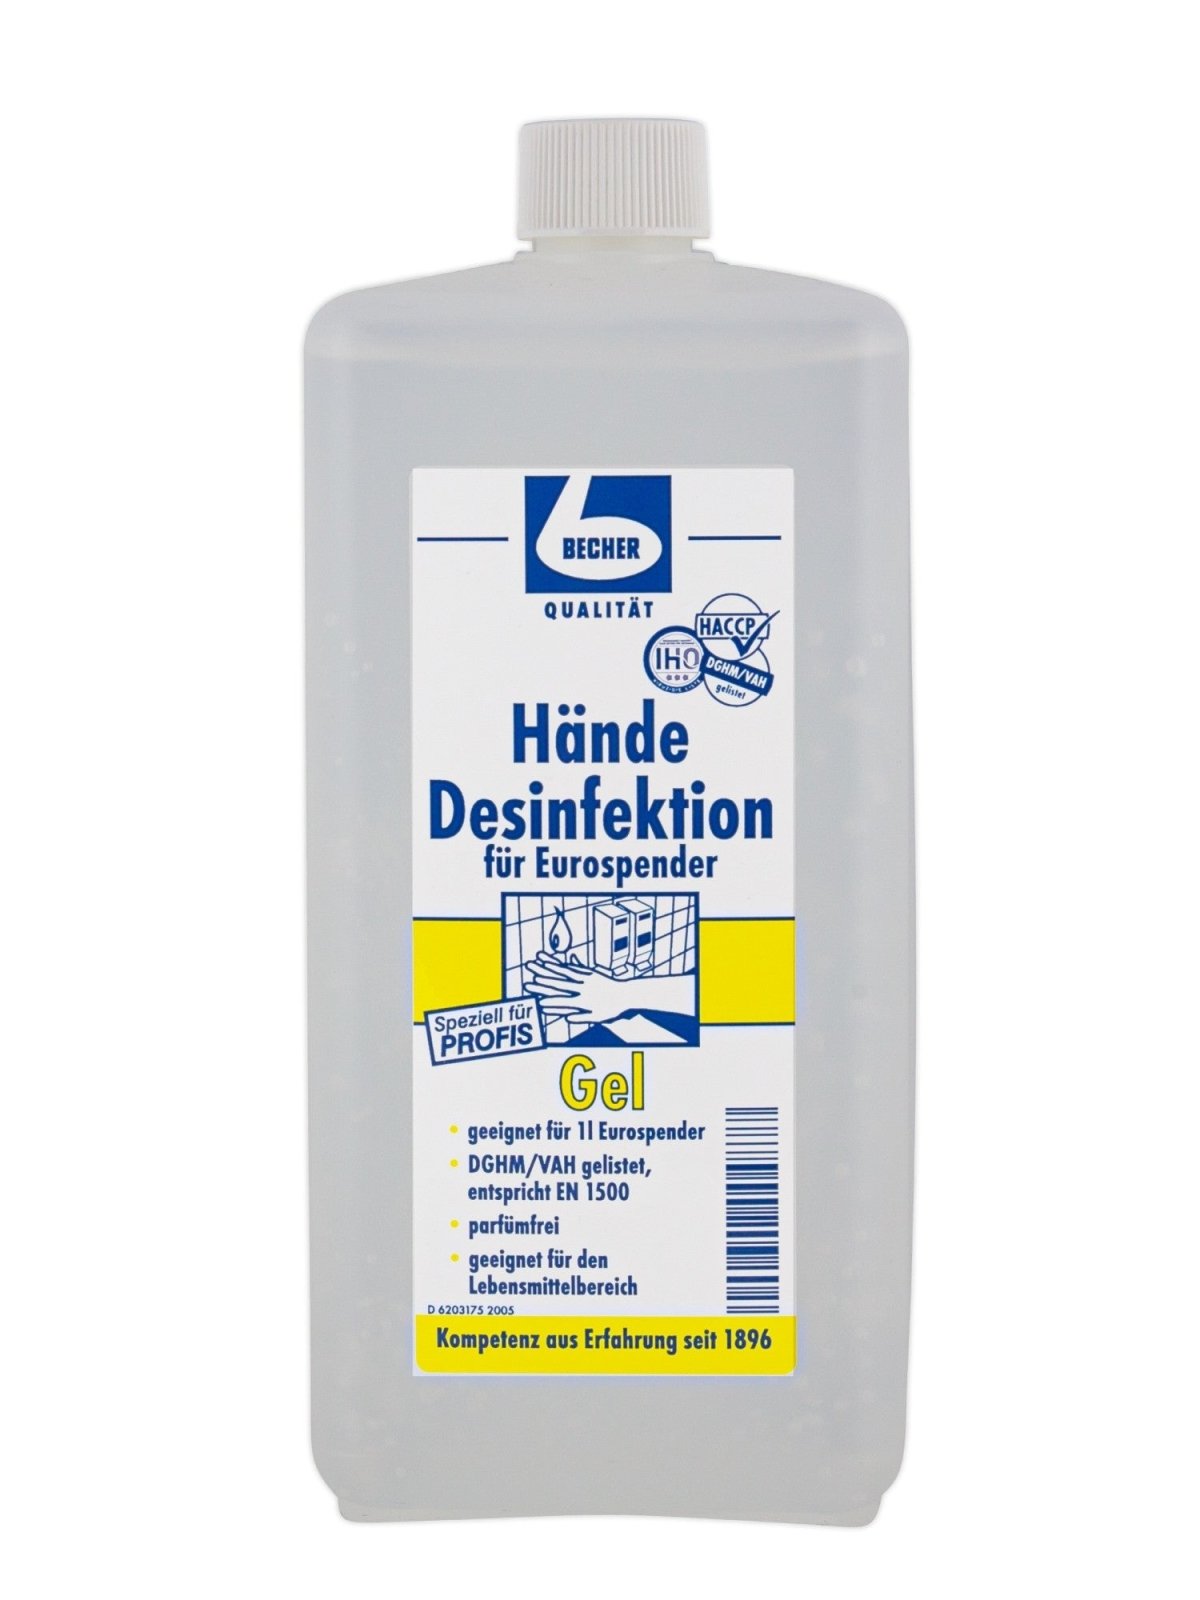 Dr. Becher Hände Desinfektion 1 Liter geeignet für 1 L Eurospender